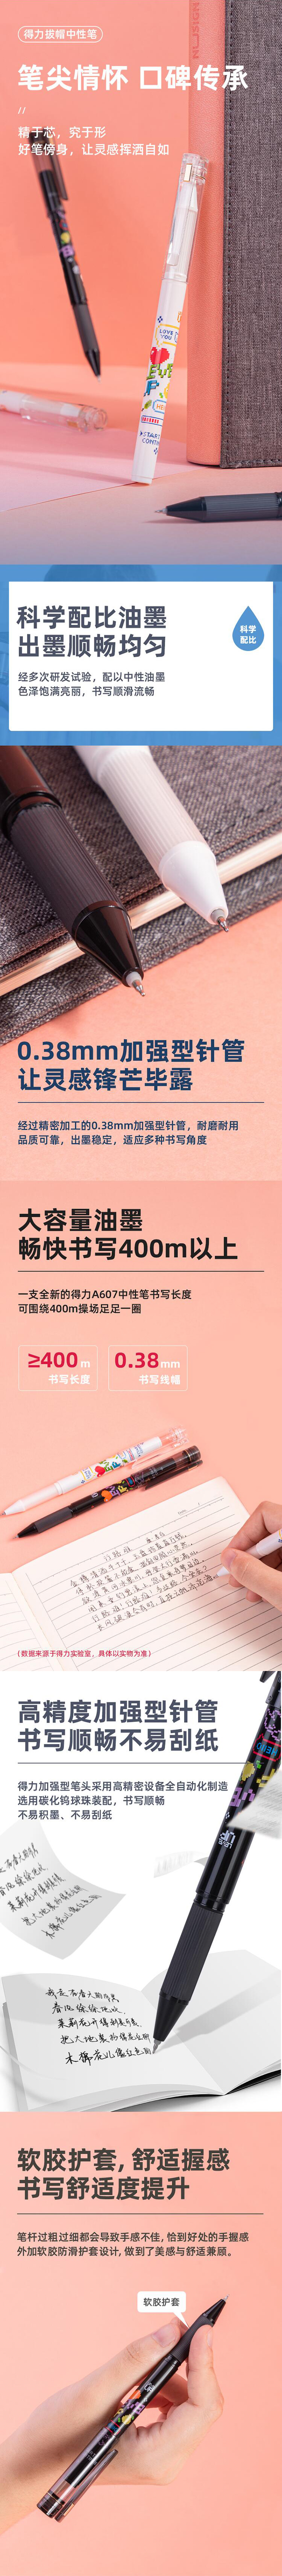 得力 deli A607 学生中性笔0.38mm加强型针管(黑)(白杆) .jpg